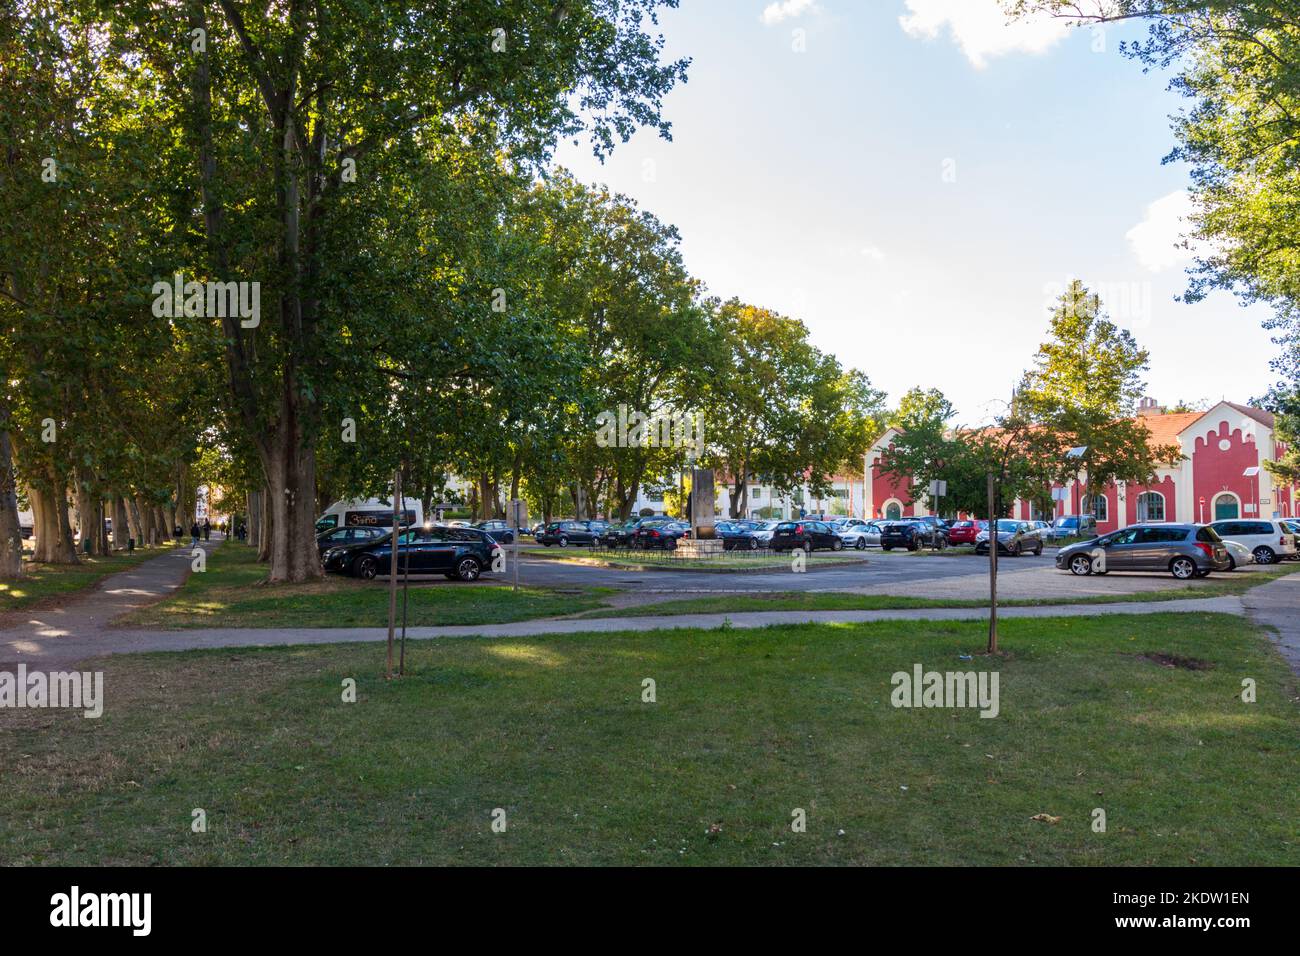 Parc avec grands platanes de Londres (Platanus × acerifolia) et parking, Papret, Sopron, Hongrie Banque D'Images